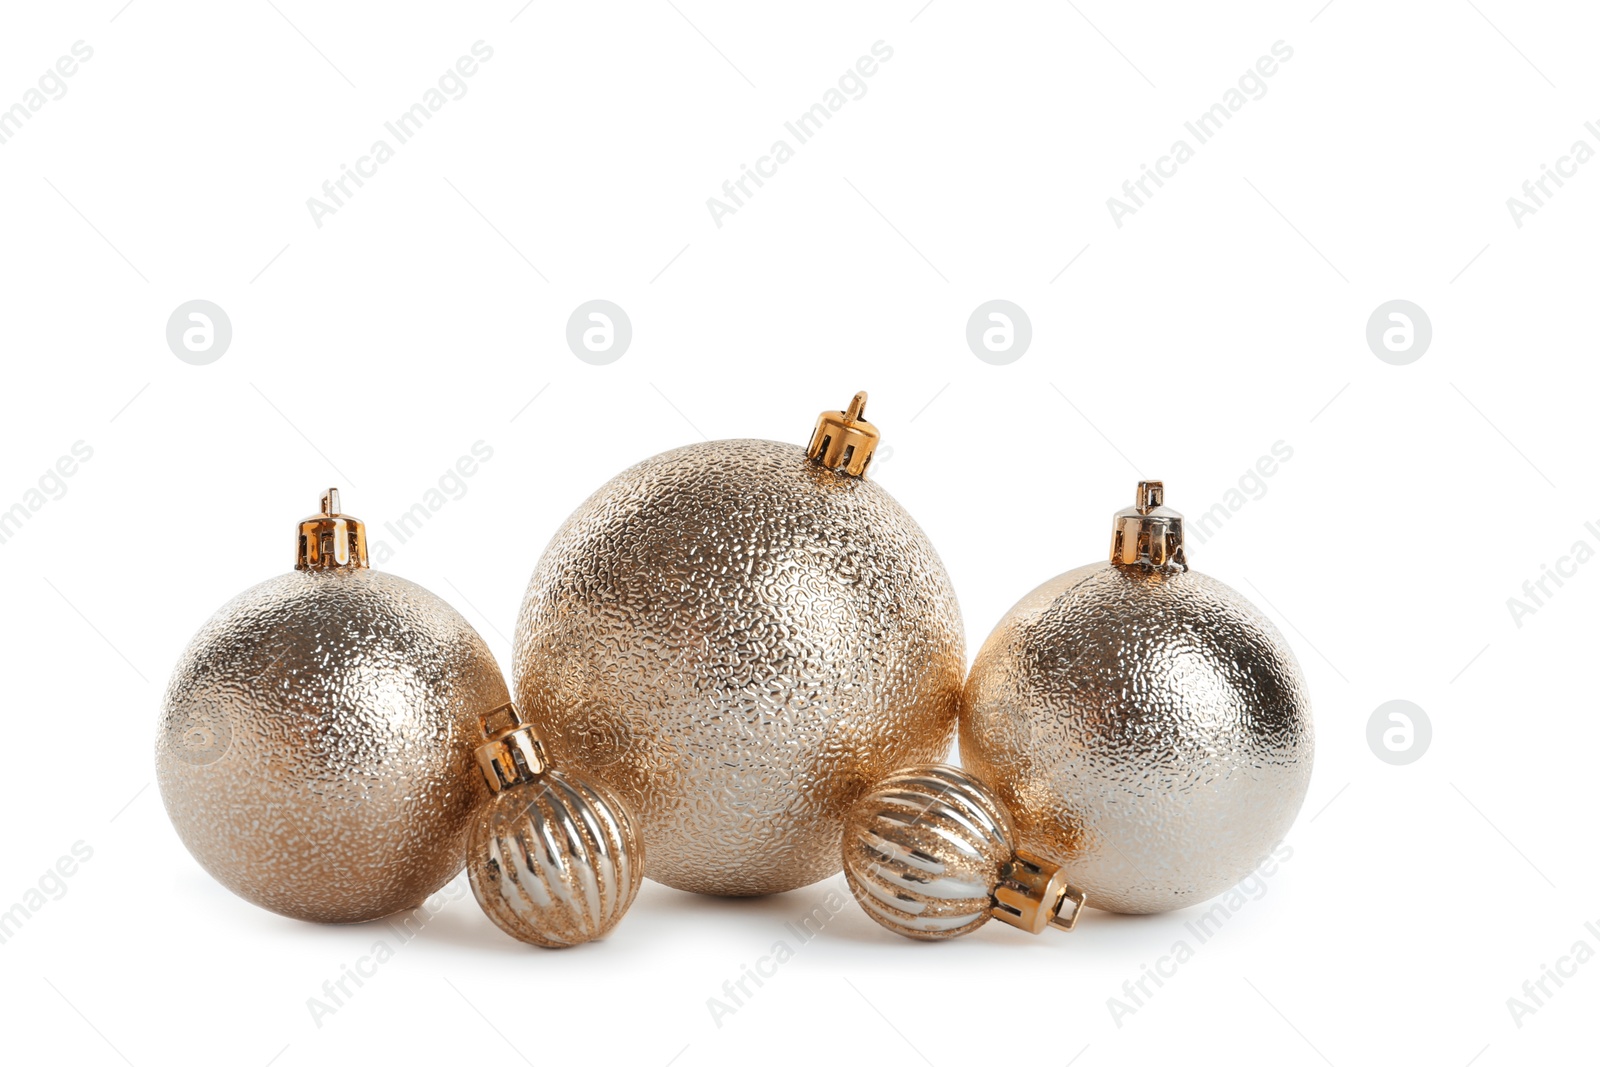 Photo of Beautiful shiny Christmas balls on white background